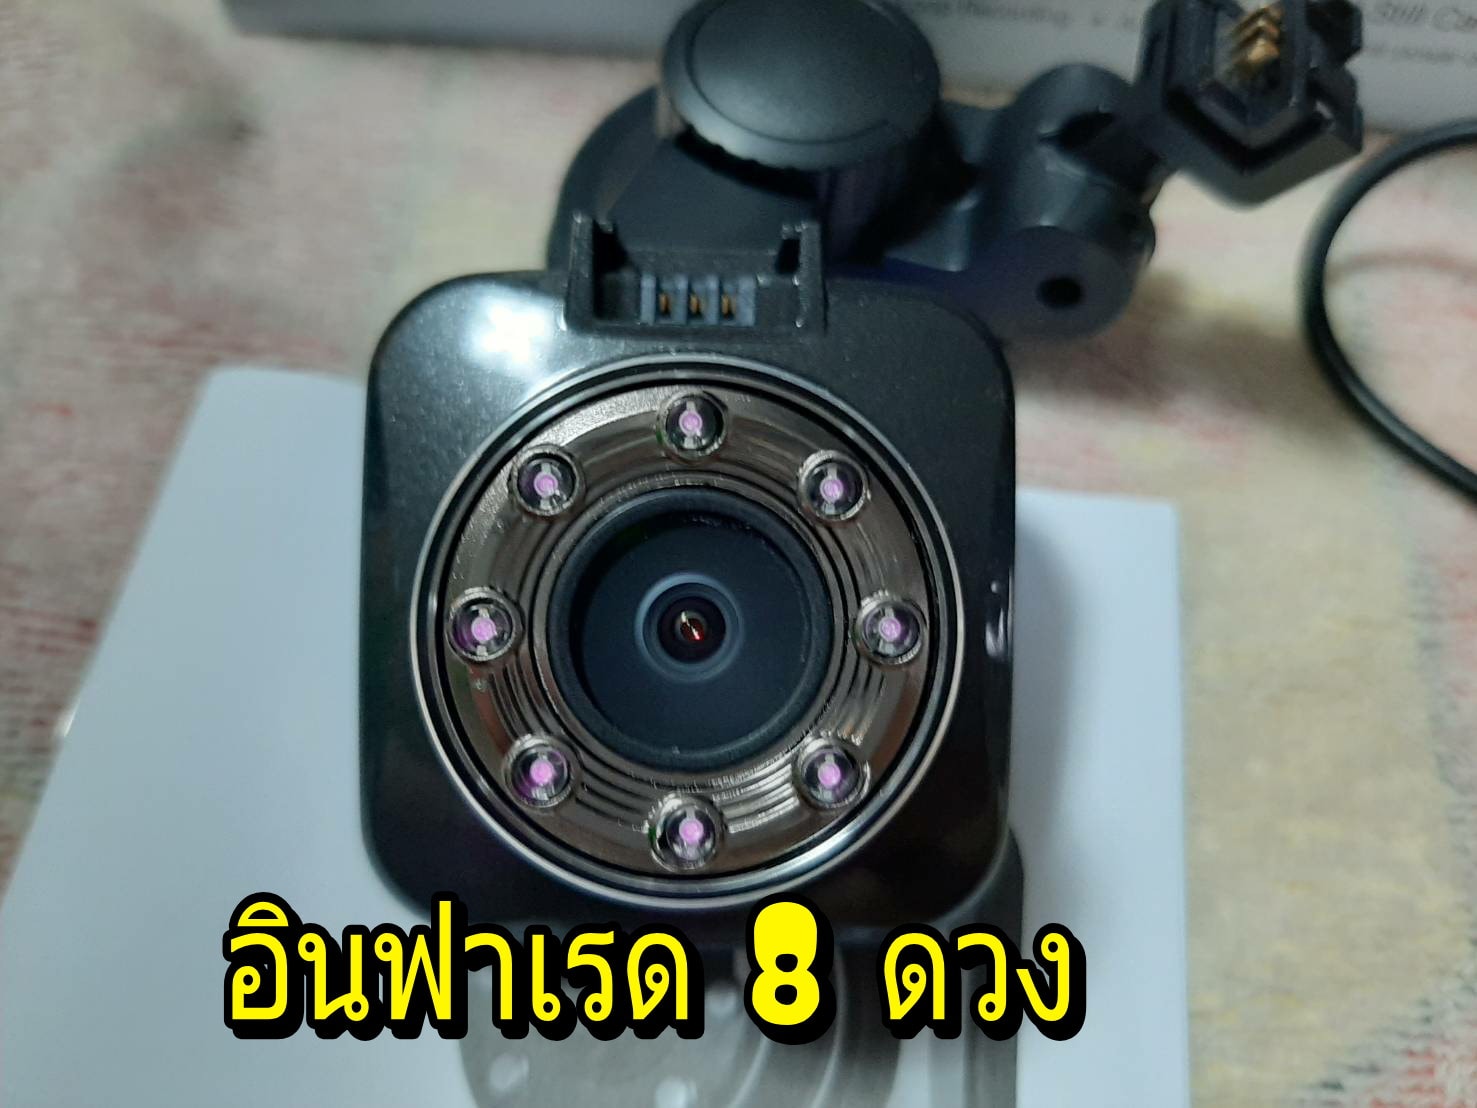 Dash Camera กล้องวีดีโอติดรถยนต์ G-55 เมนูไทย มีระบบถ่ายอัตโนมัติ ขณะจอดรถ 